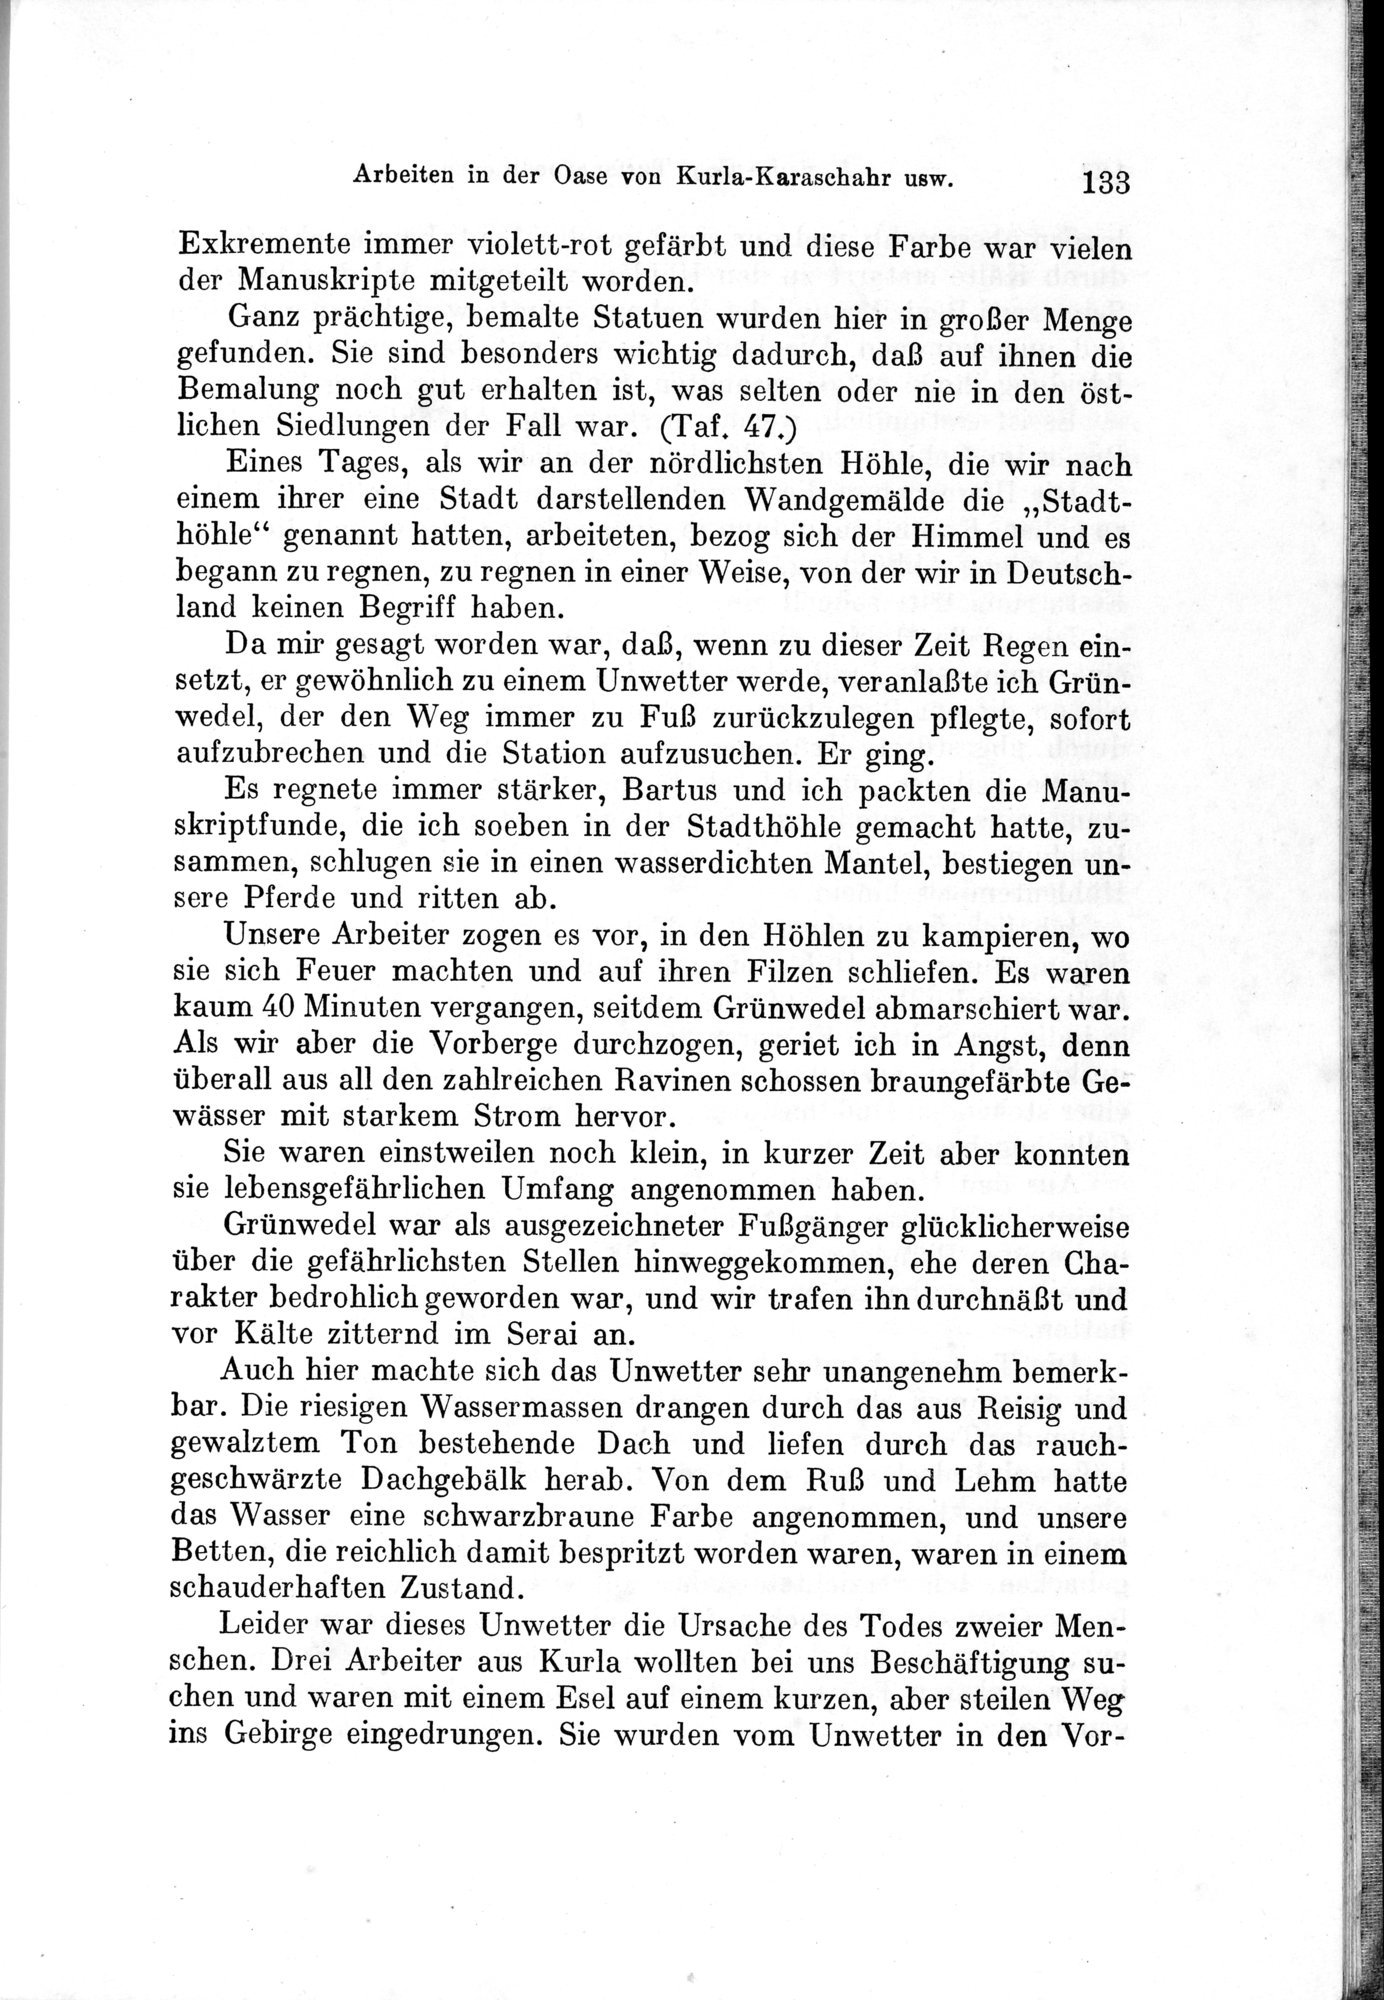 Auf Hellas Spuren in Ostturkistan : vol.1 / Page 191 (Grayscale High Resolution Image)